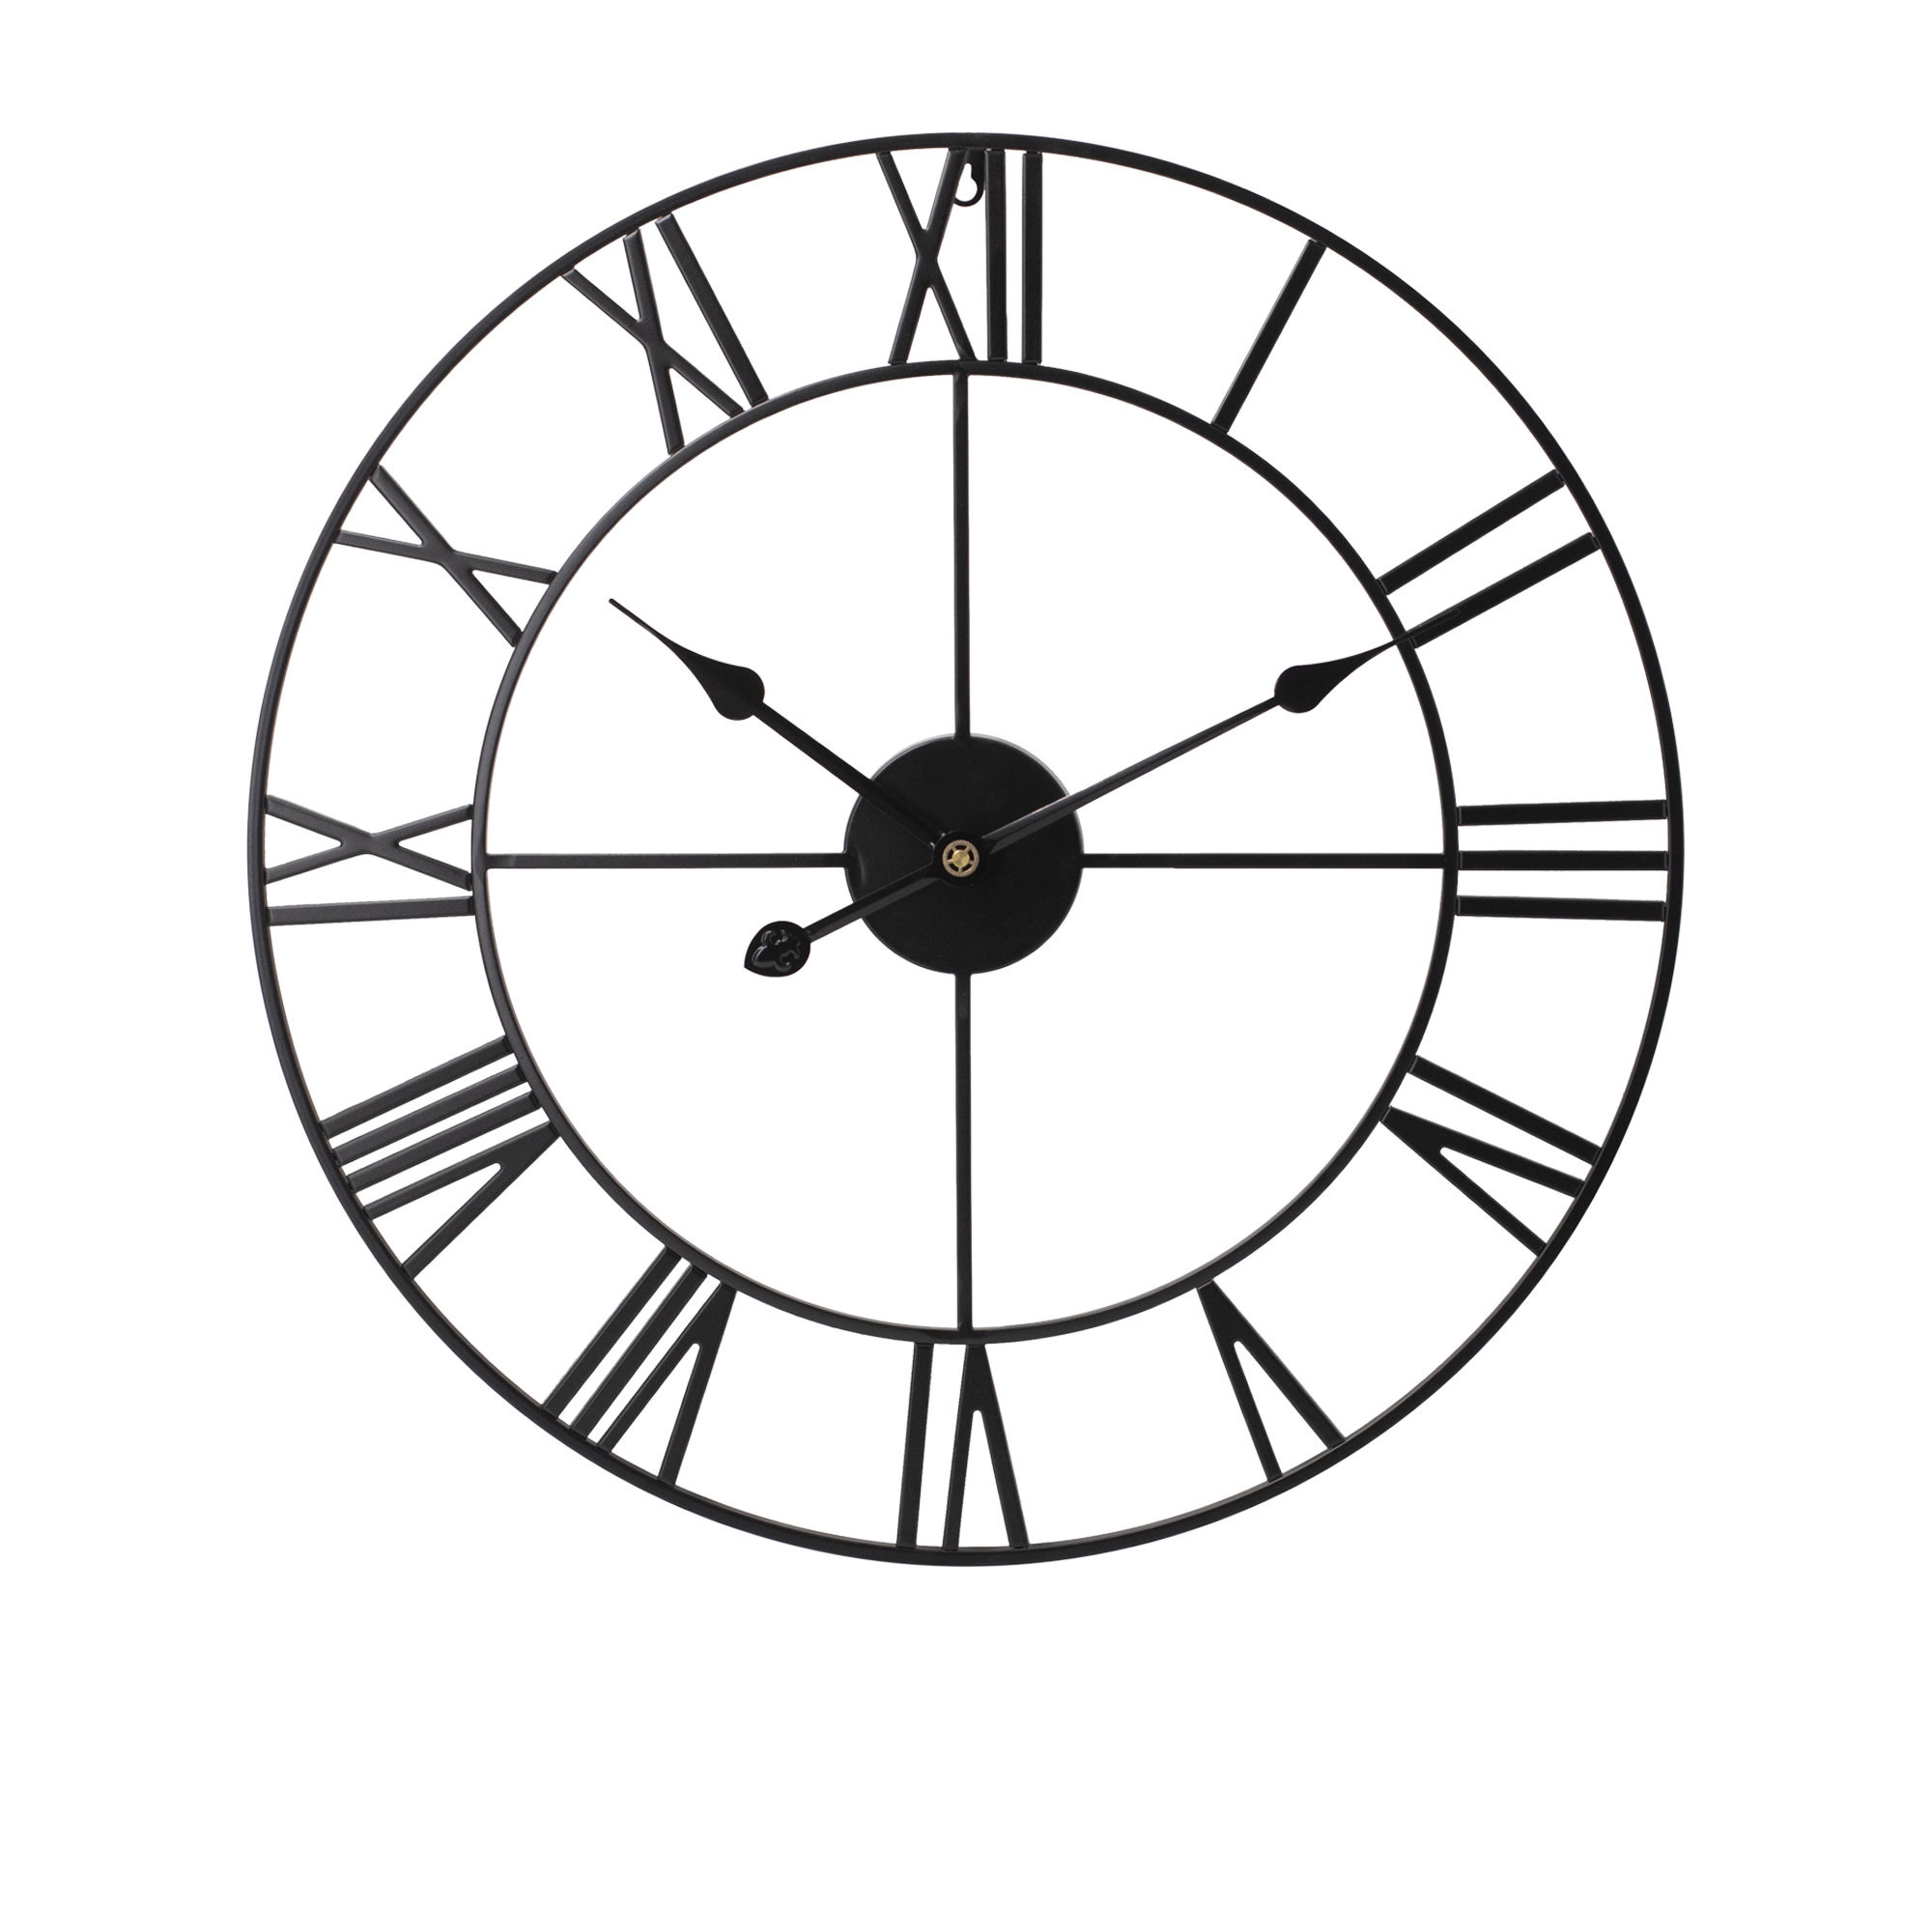 Toki Karl Wall Clock 80cm Black Image 1